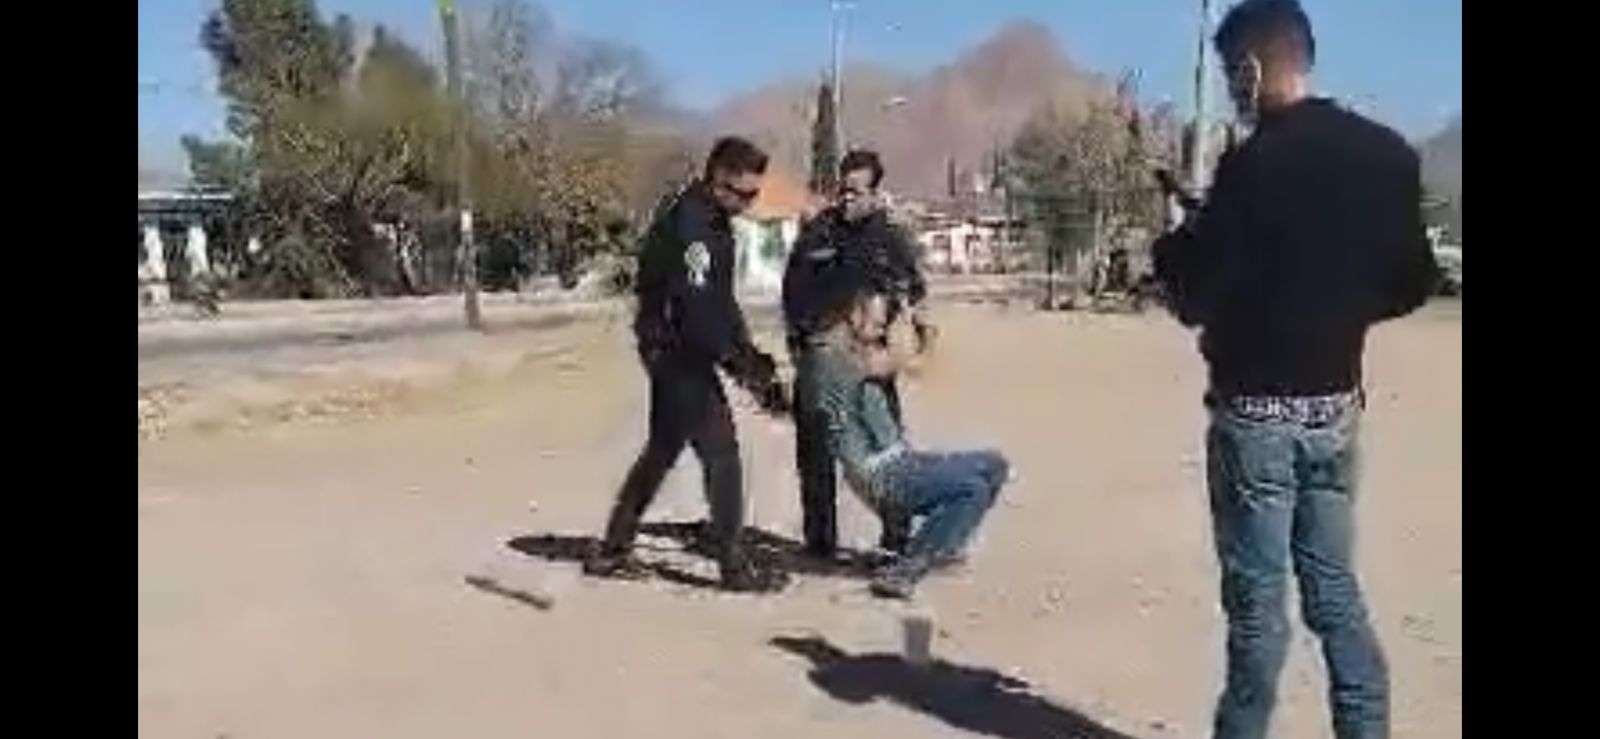 Captan en video abuso policial